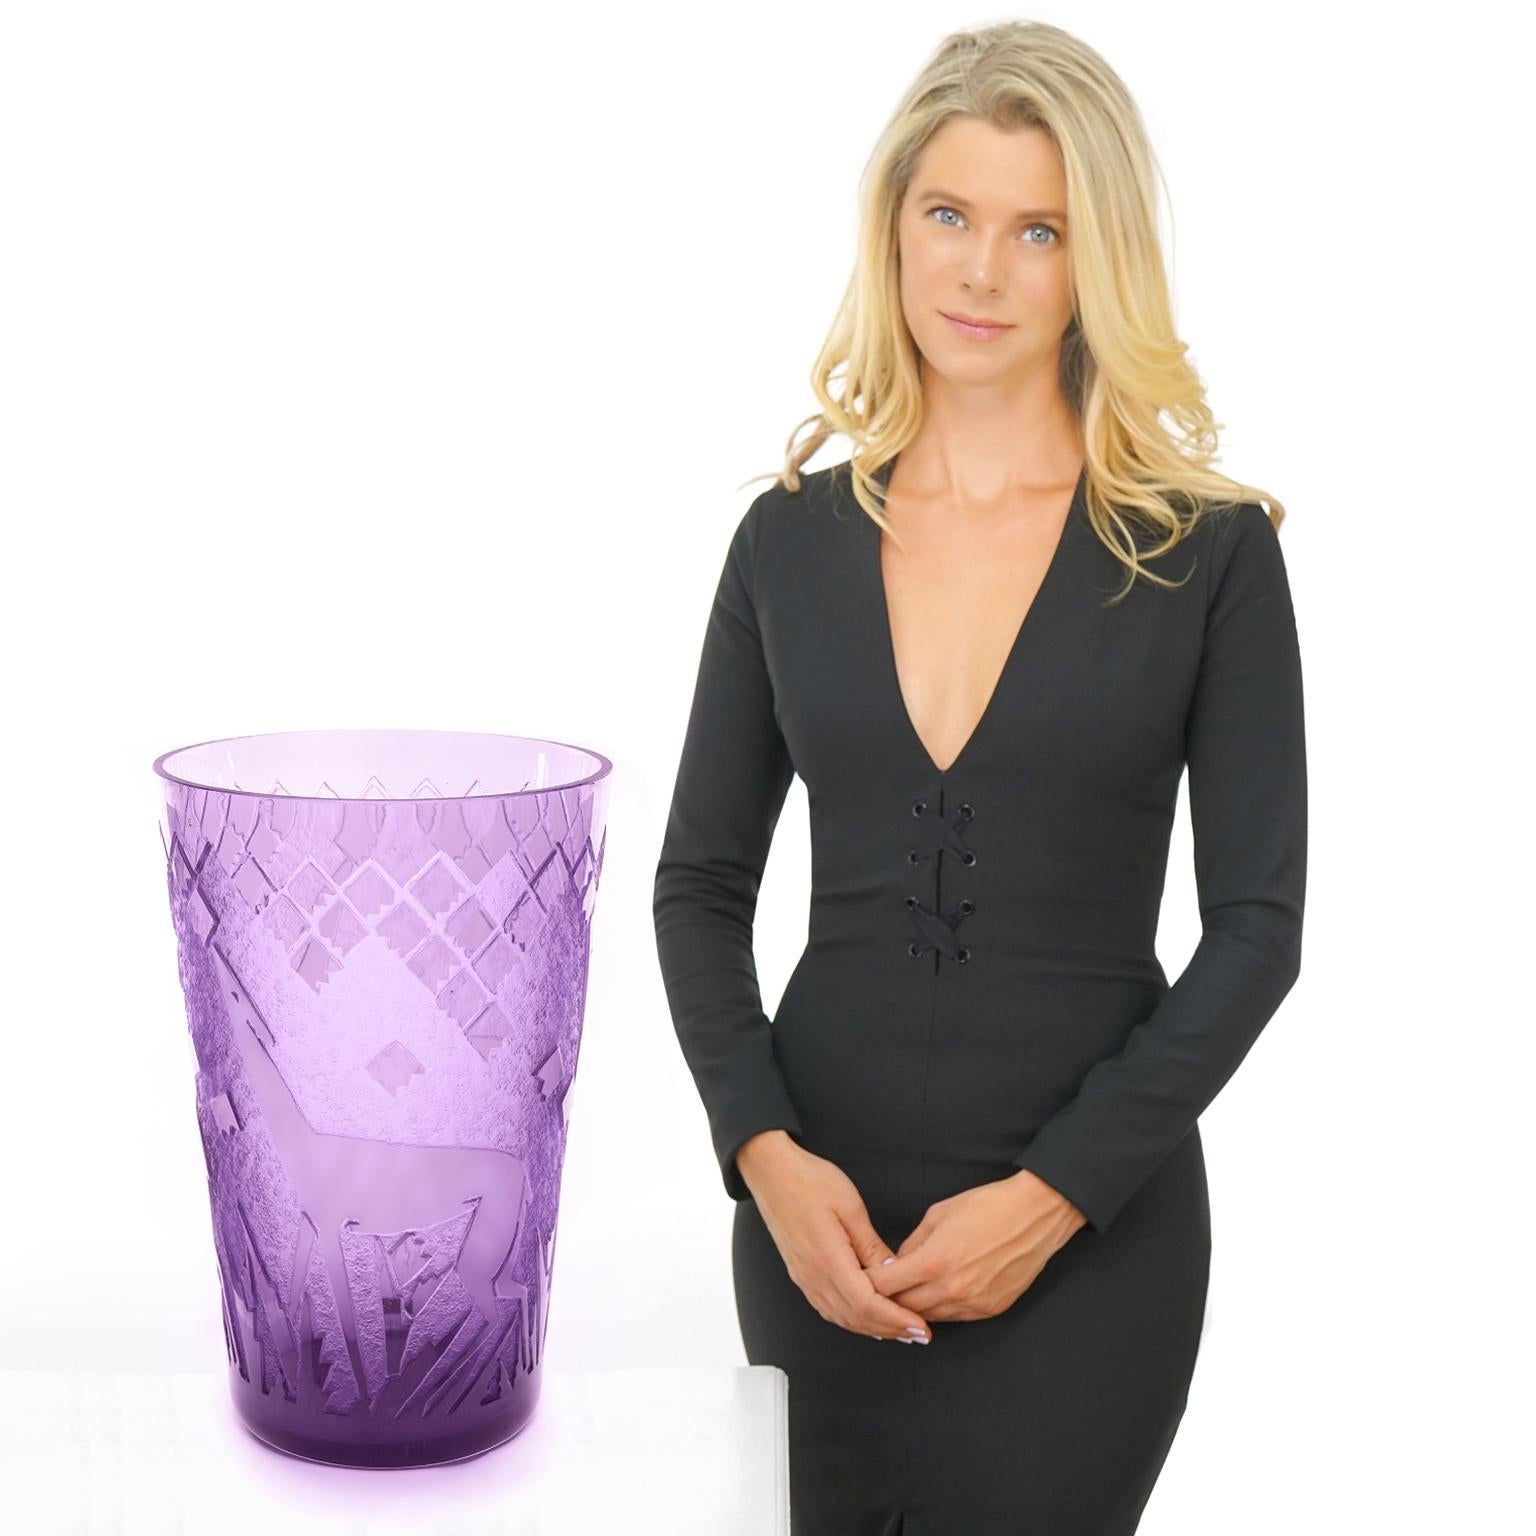 Vers les années 1920, par Daum, Nancy, France. Cet important vase Art déco de Daum Nancy a une fabuleuse présence visuelle. La spectaculaire œuvre d'art déco est soulignée par sa couleur violette vibrante, sa hauteur extrême et sa forme élégante.